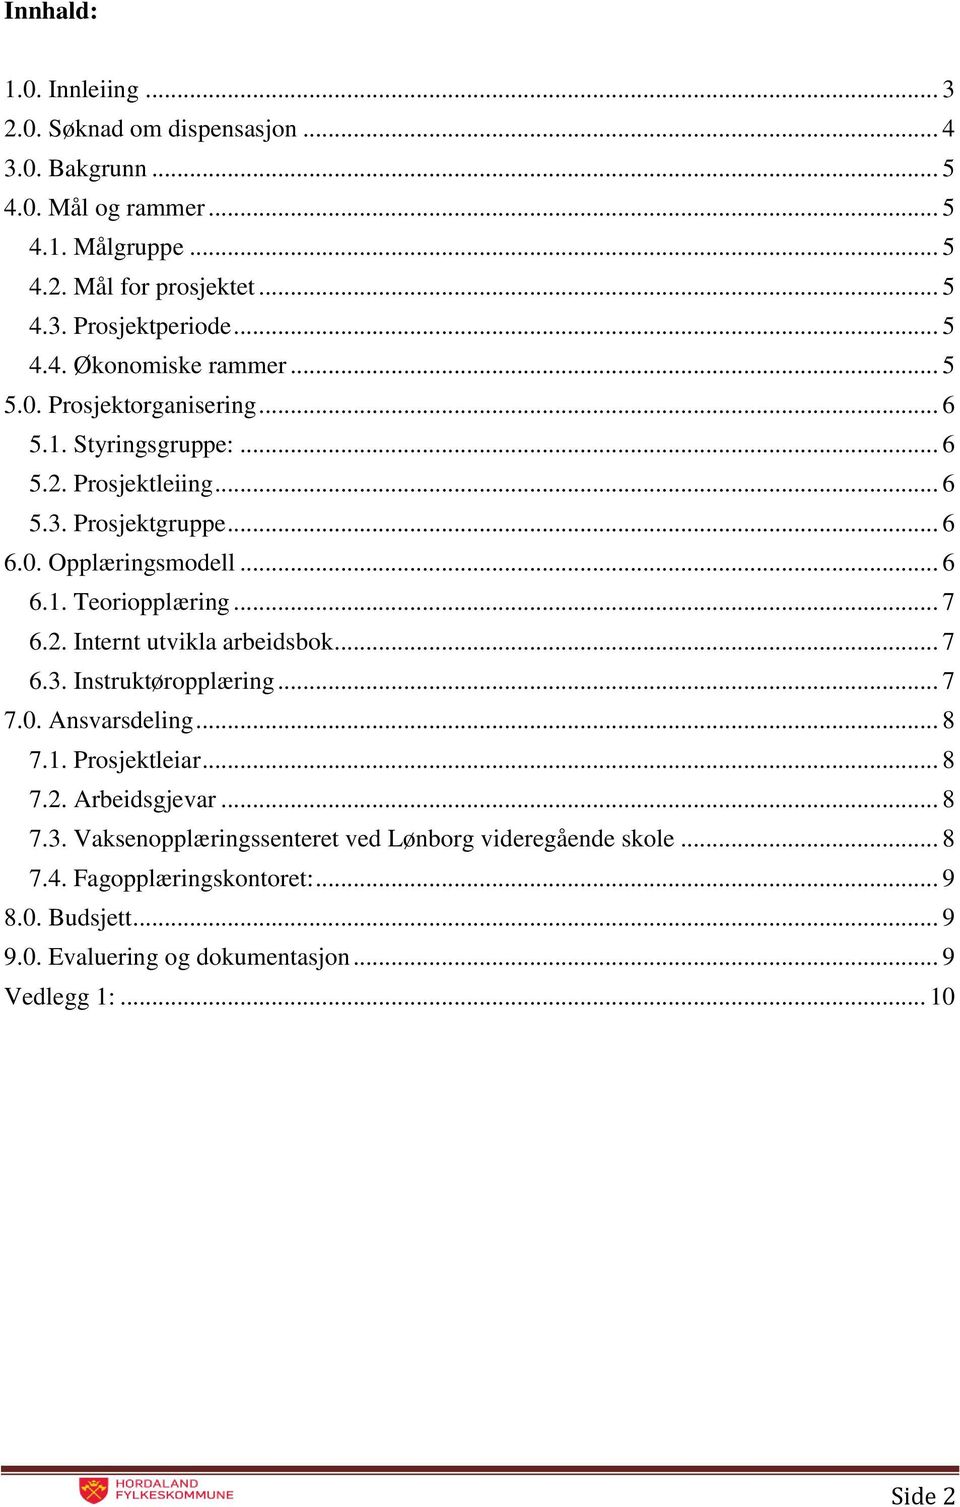 .. 7 6.2. Internt utvikla arbeidsbok... 7 6.3. Instruktøropplæring... 7 7.0. Ansvarsdeling... 8 7.1. Prosjektleiar... 8 7.2. Arbeidsgjevar... 8 7.3. Vaksenopplæringssenteret ved Lønborg videregående skole.